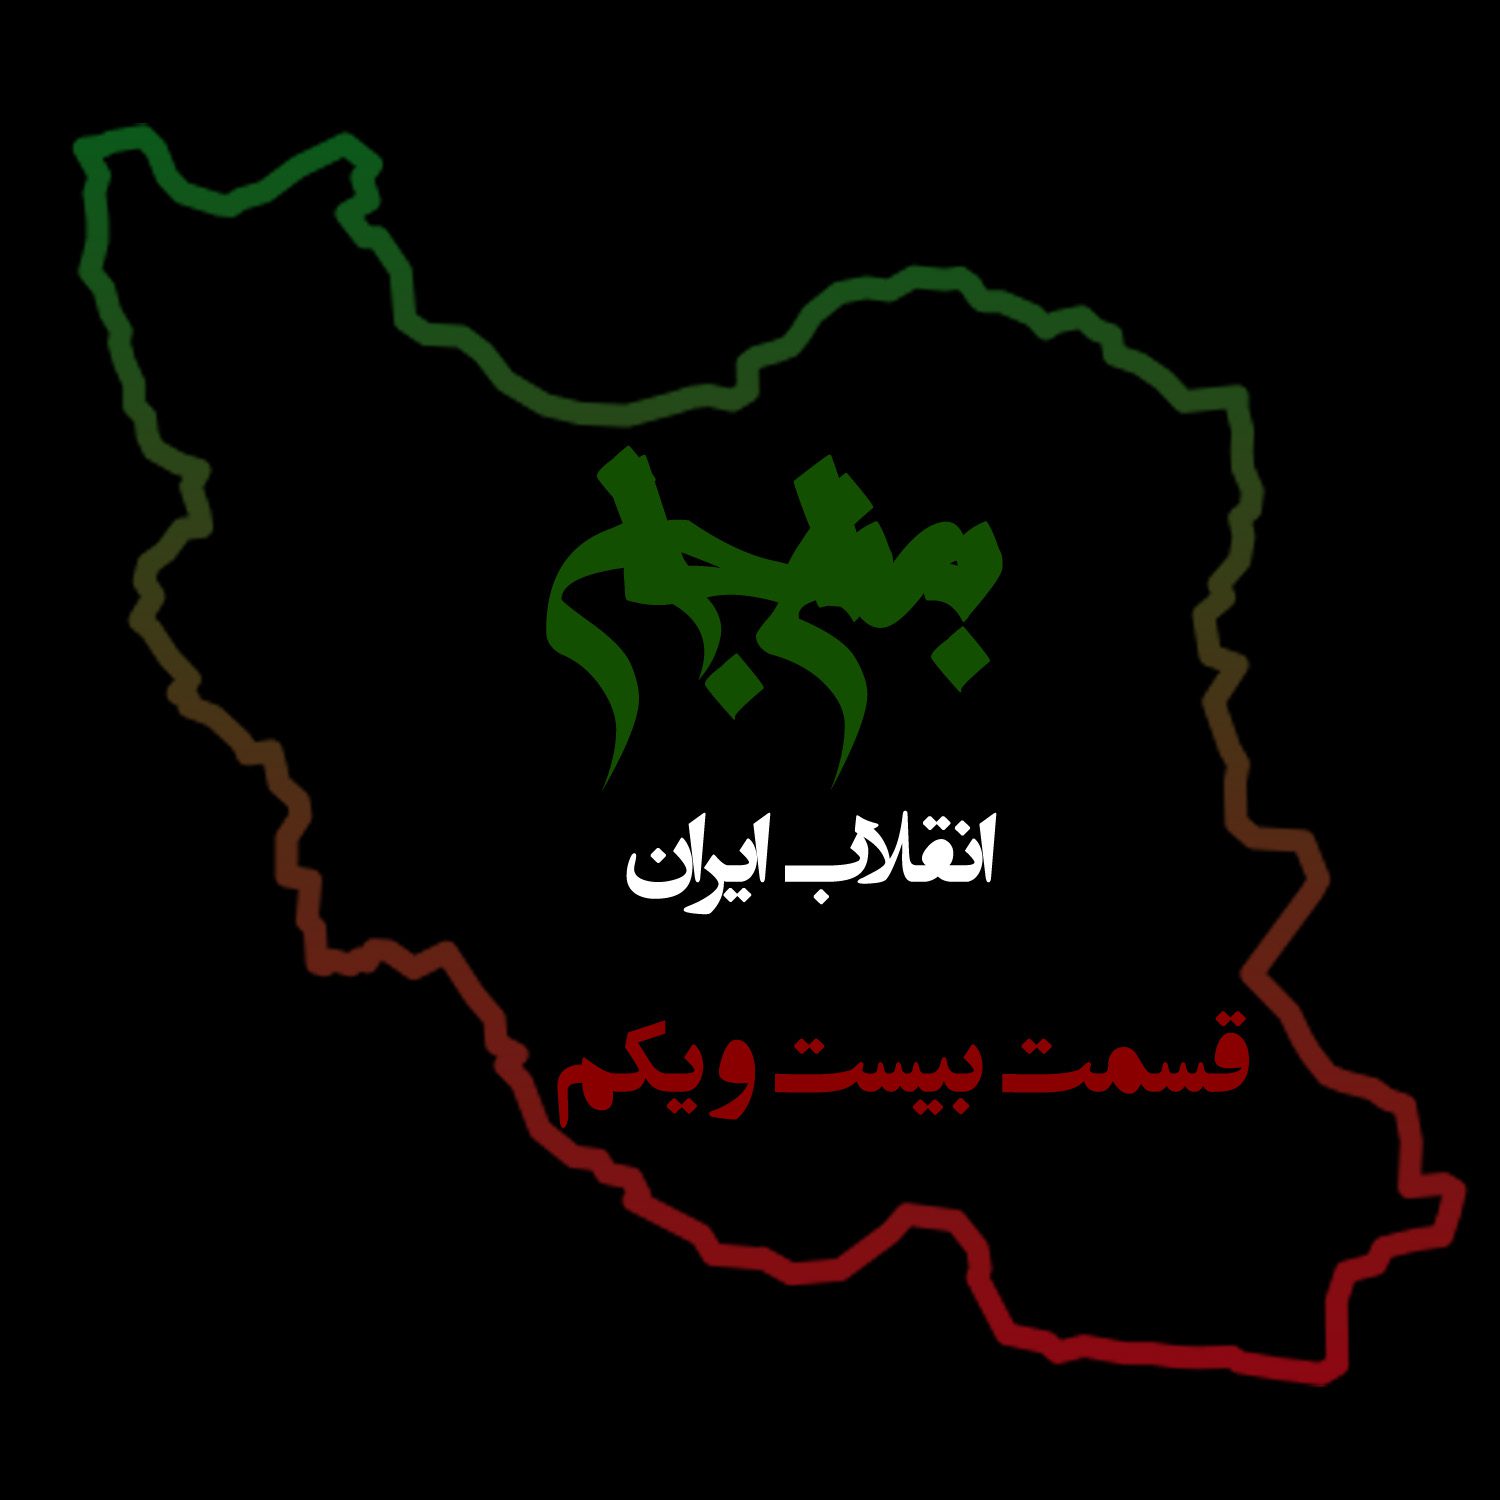 پادکست به نام جان - ویژه برنامه انقلاب ایران - قسمت بیست و یکم قبول دیگران - با نیما شهسواری